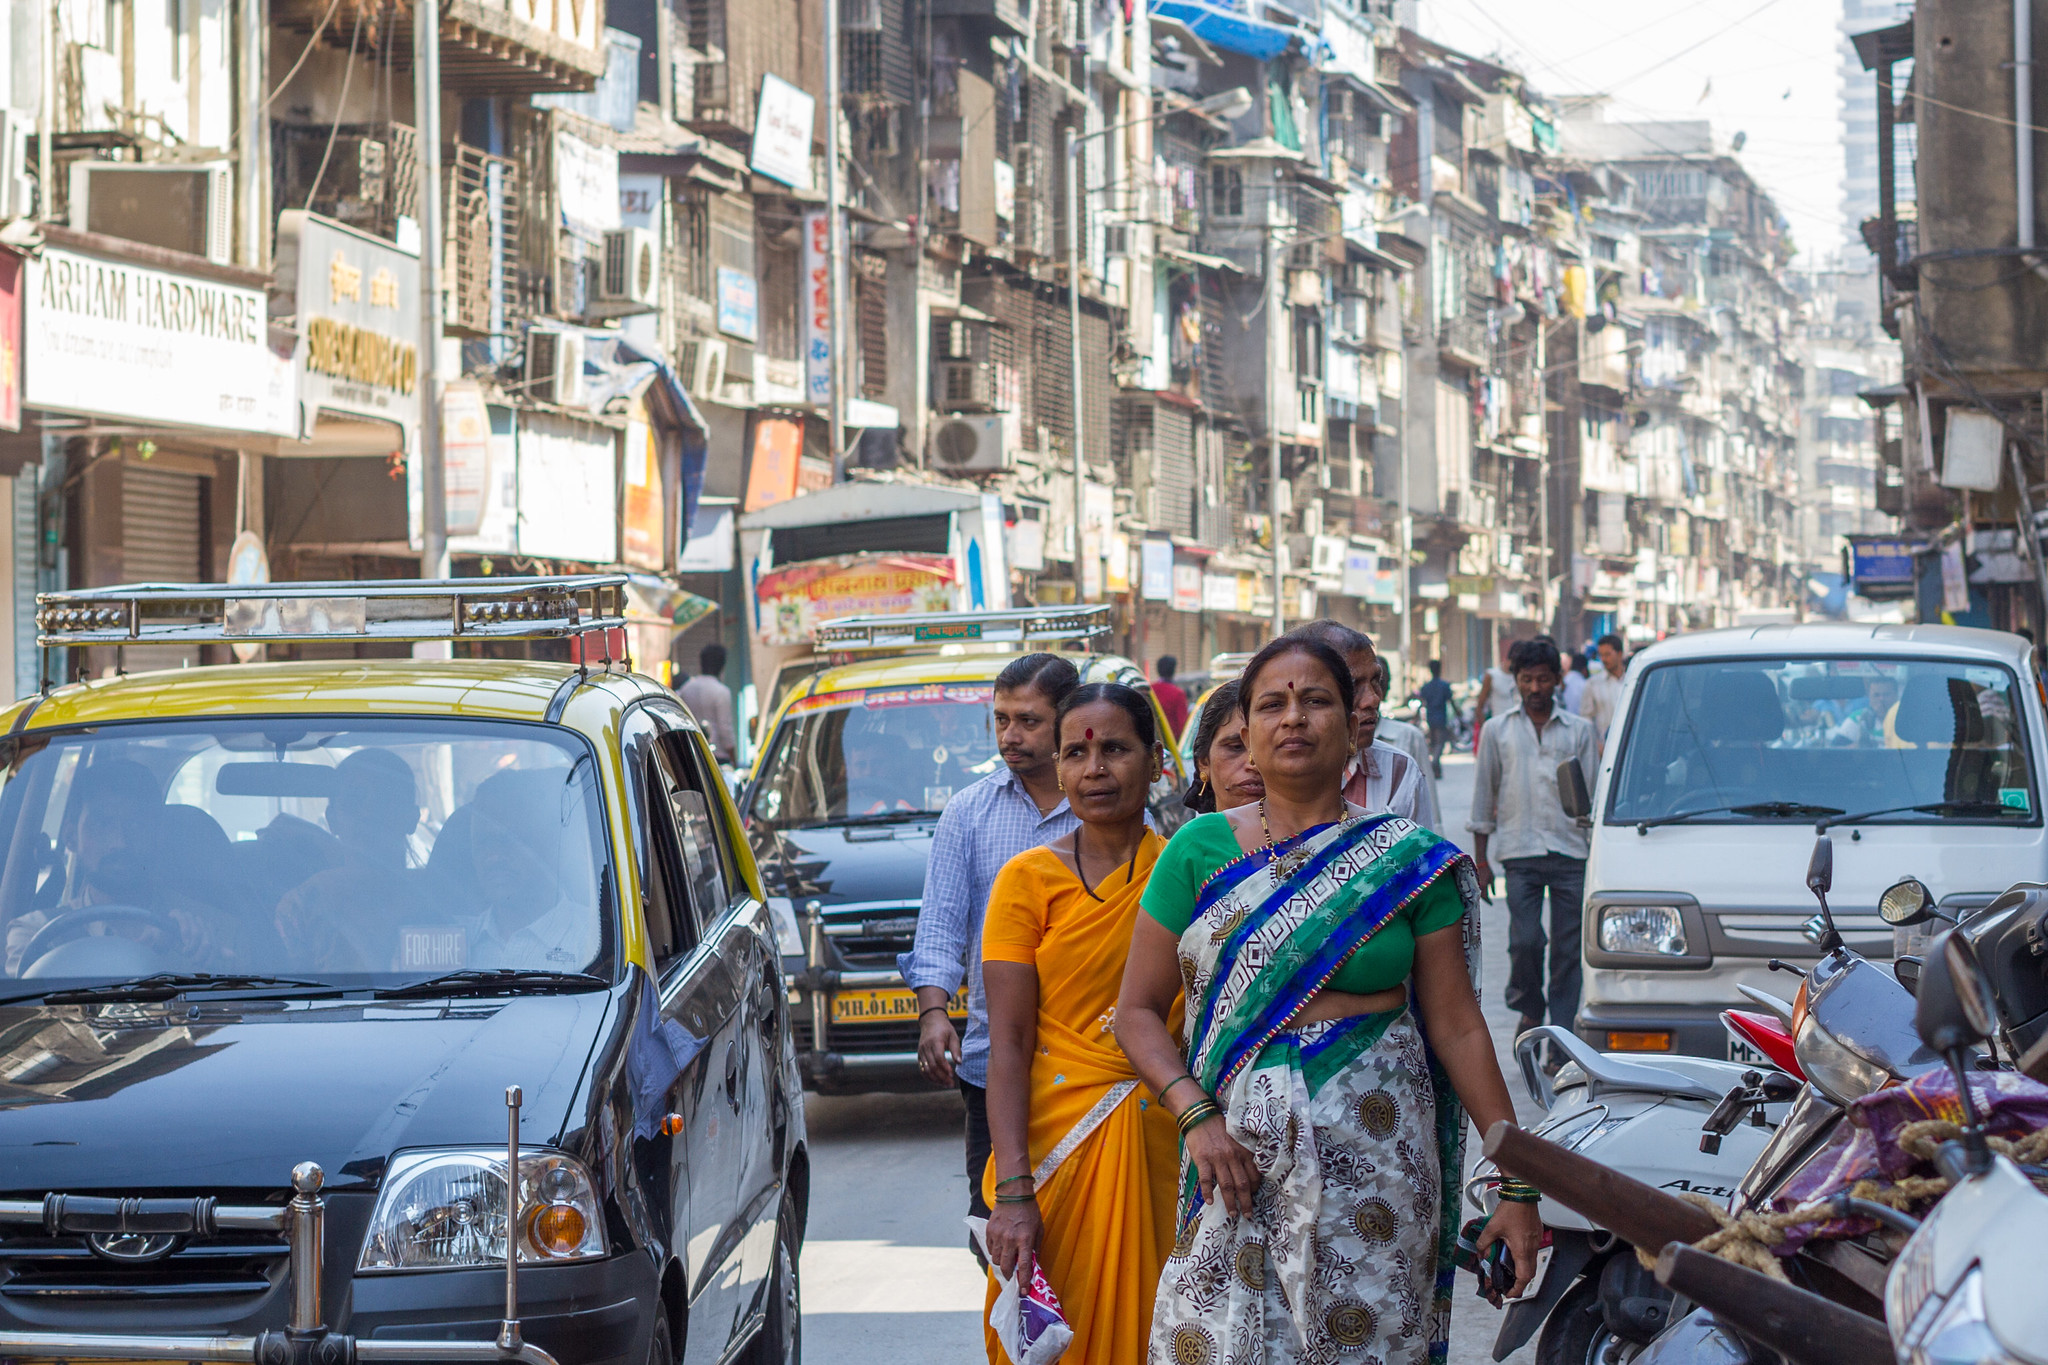 Mulheres andando em uma rua movimentada na Índia